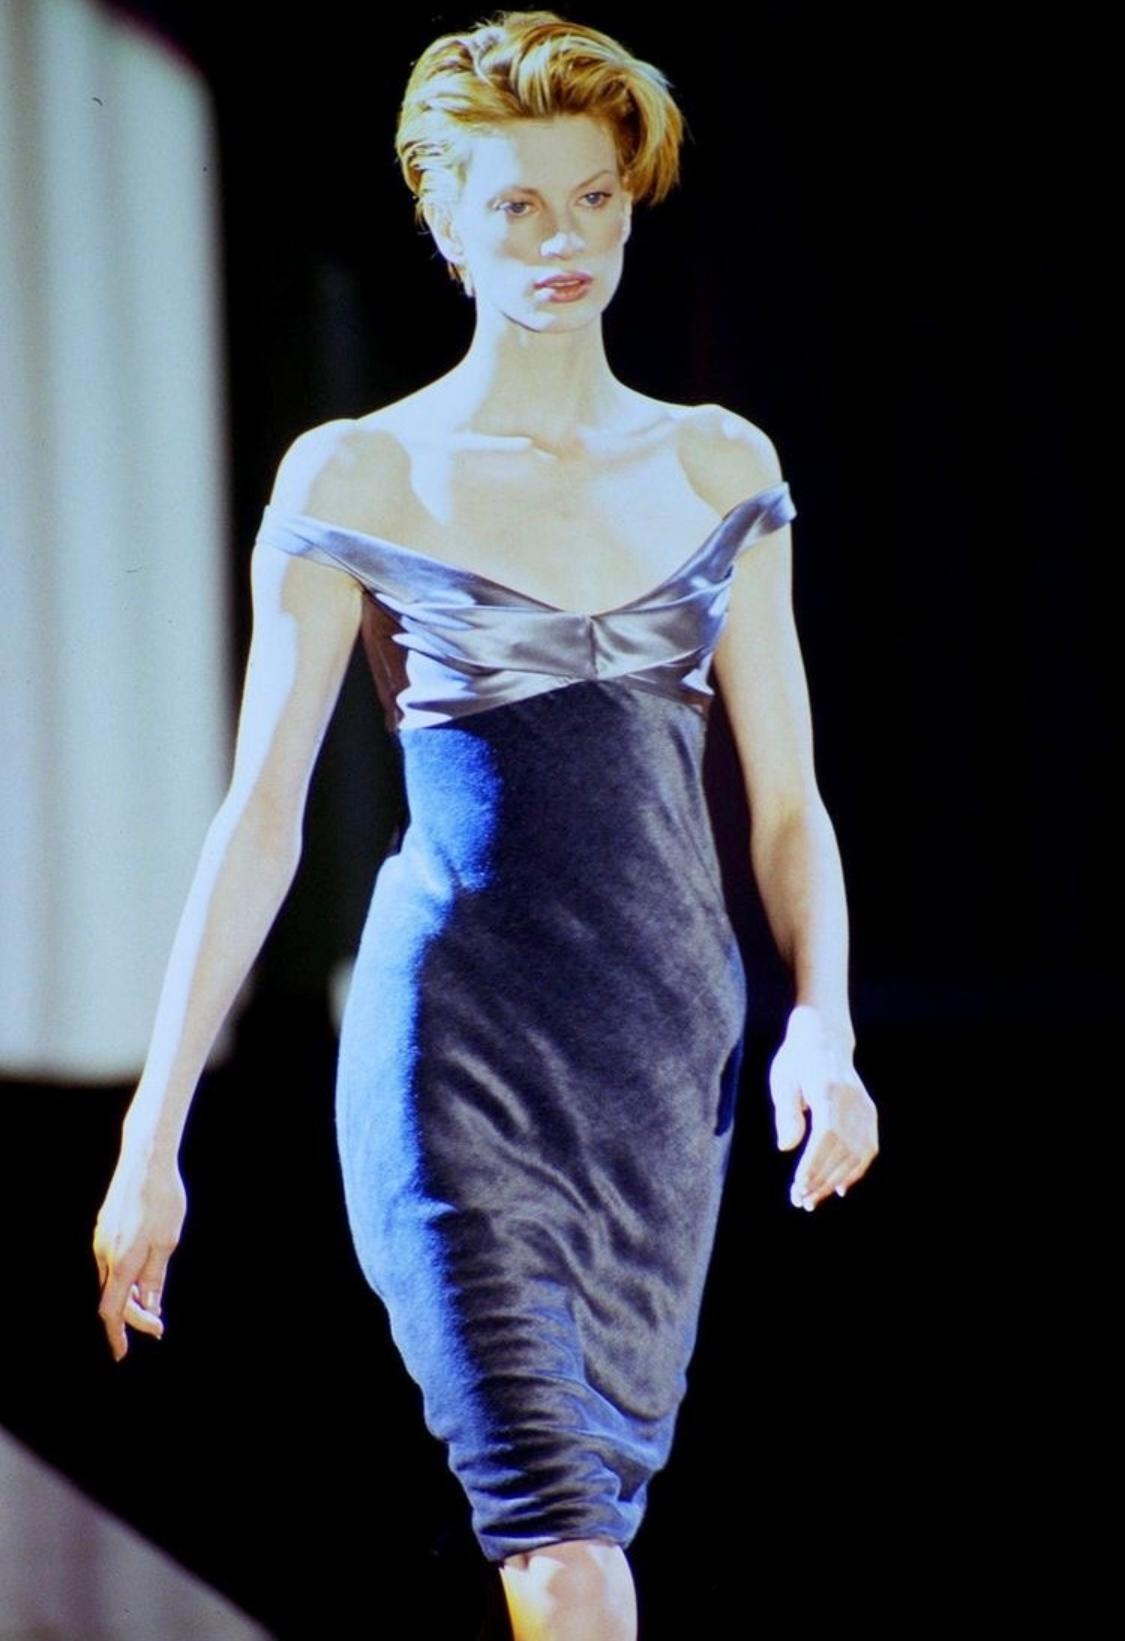 Voici une robe Gianni Versace Couture en satin et velours lustré, conçue par Gianni Versace. Issue de la collection automne-hiver 1995, cette robe a fait ses débuts sur le podium de la saison en tant que look numéro 56 sur Kristen McMenamy. La robe